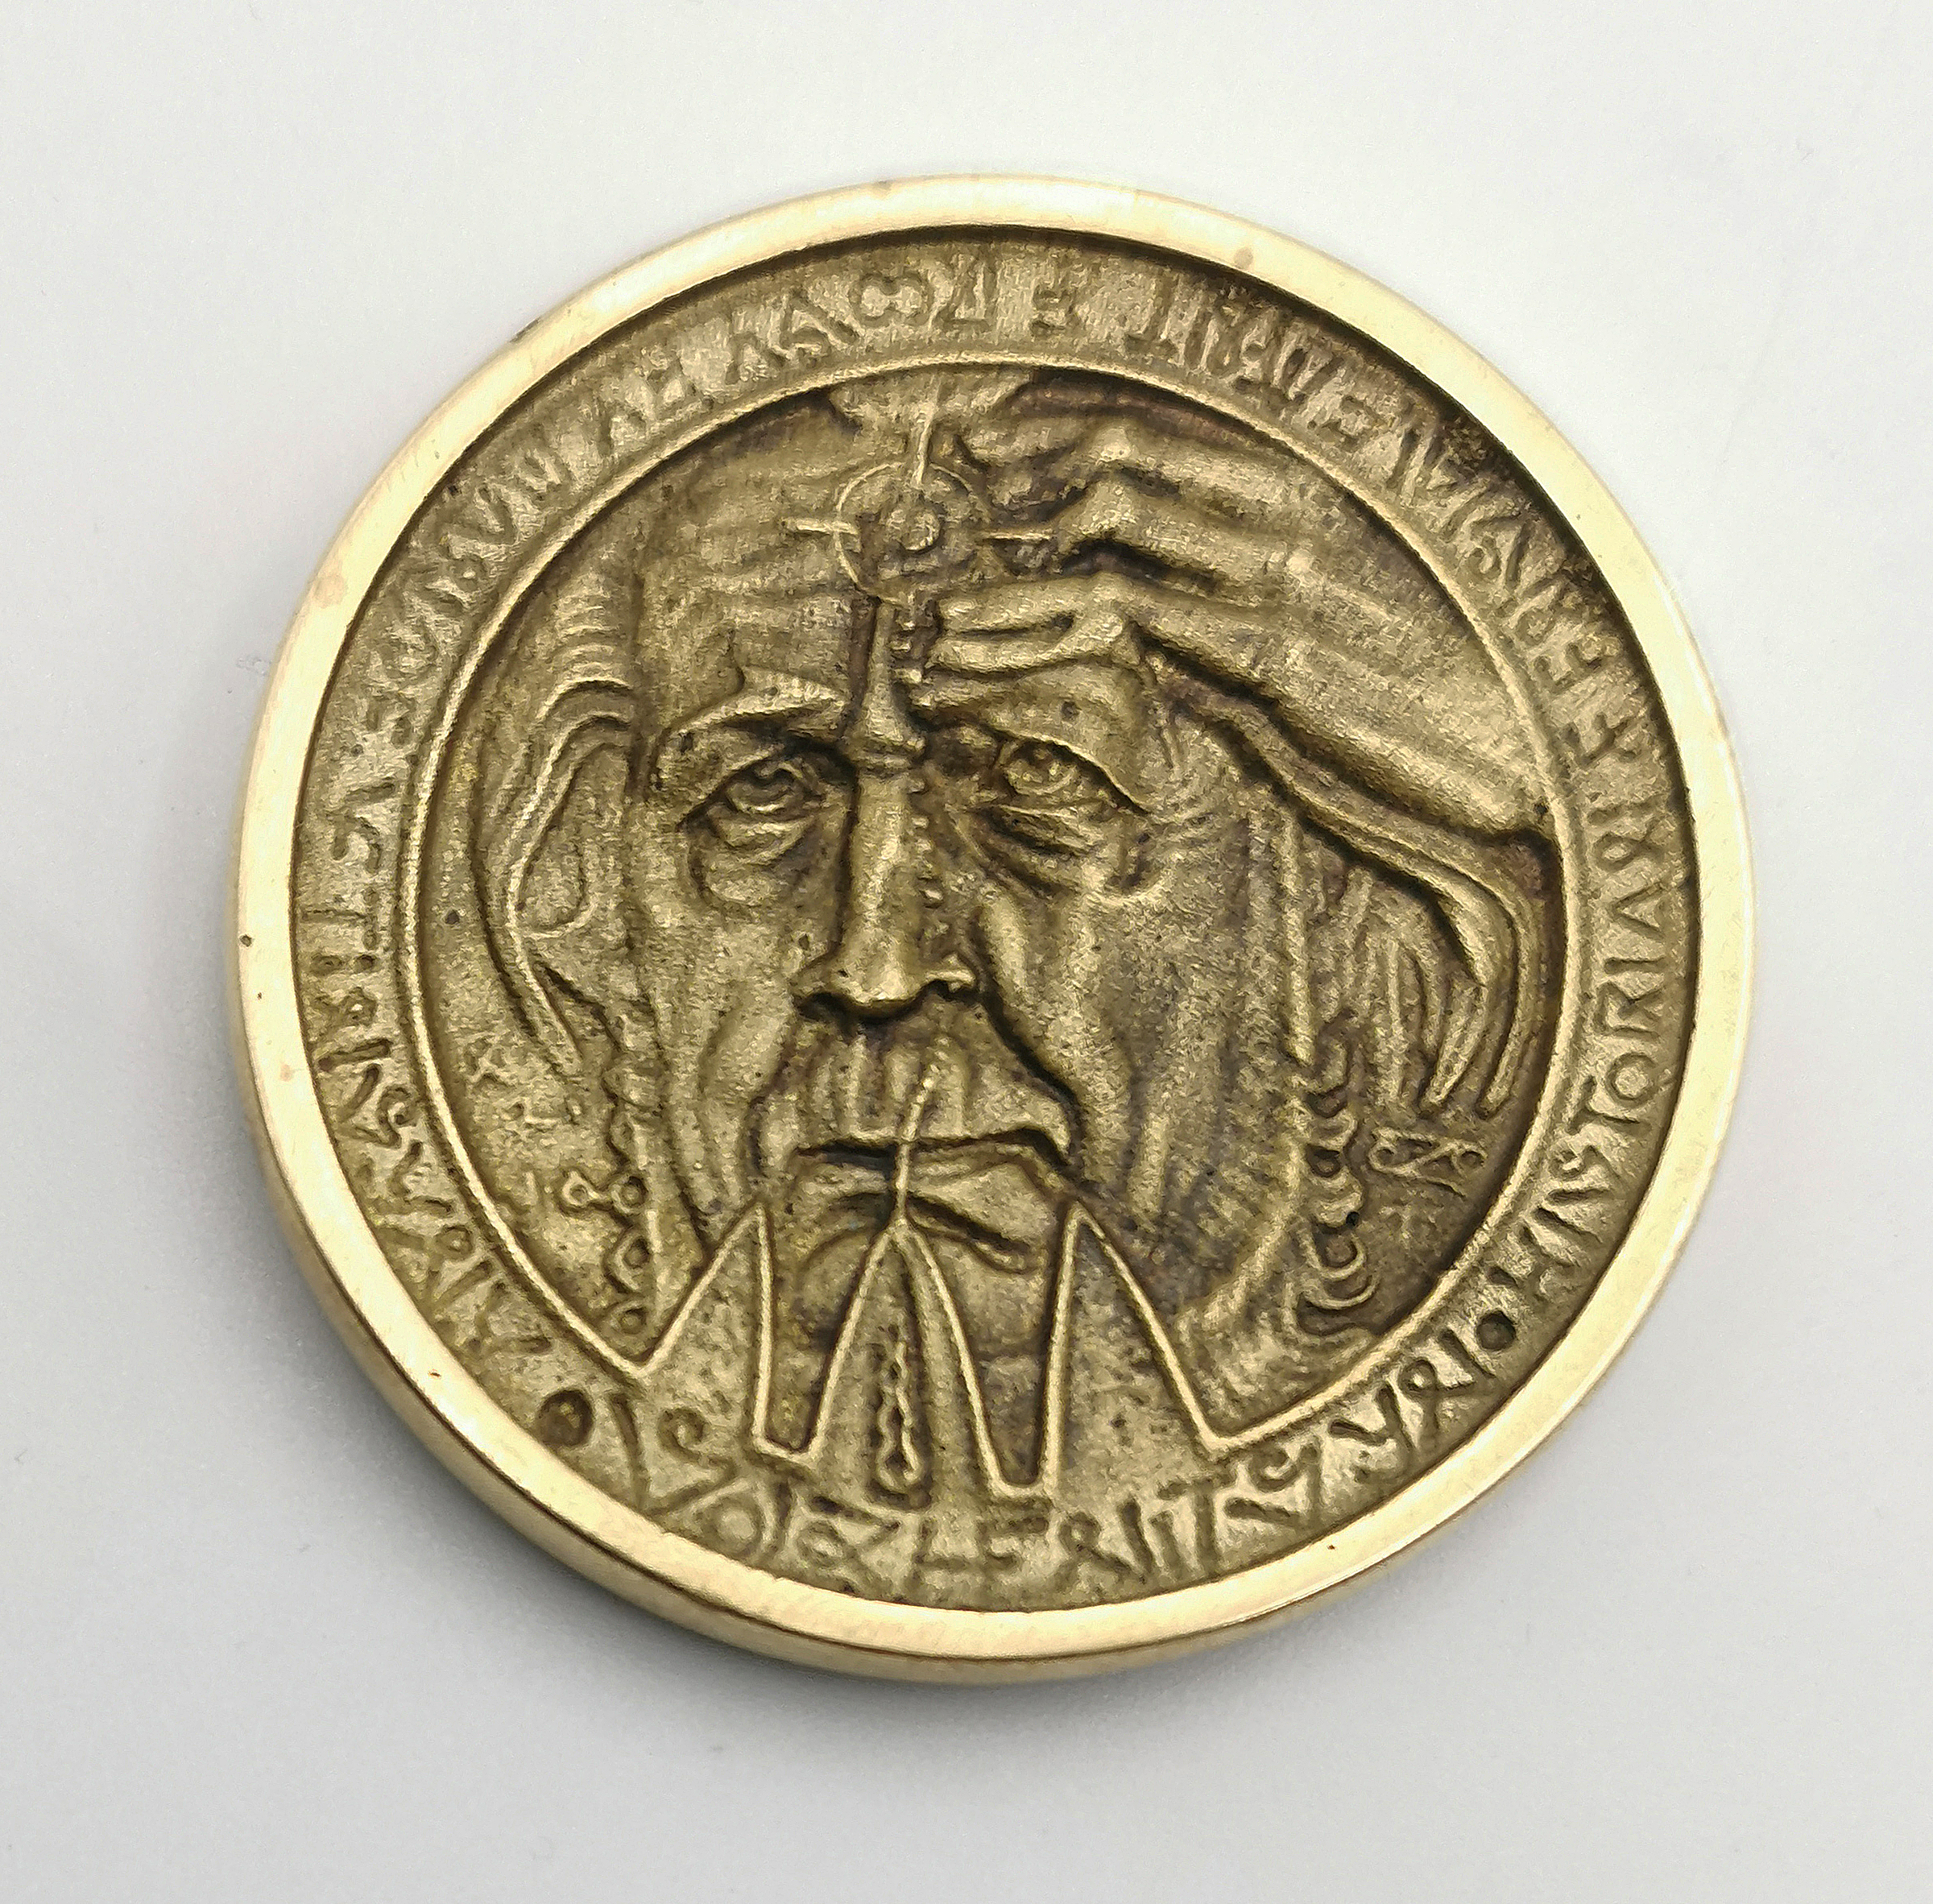 Sołżenicyn - medal, 1970